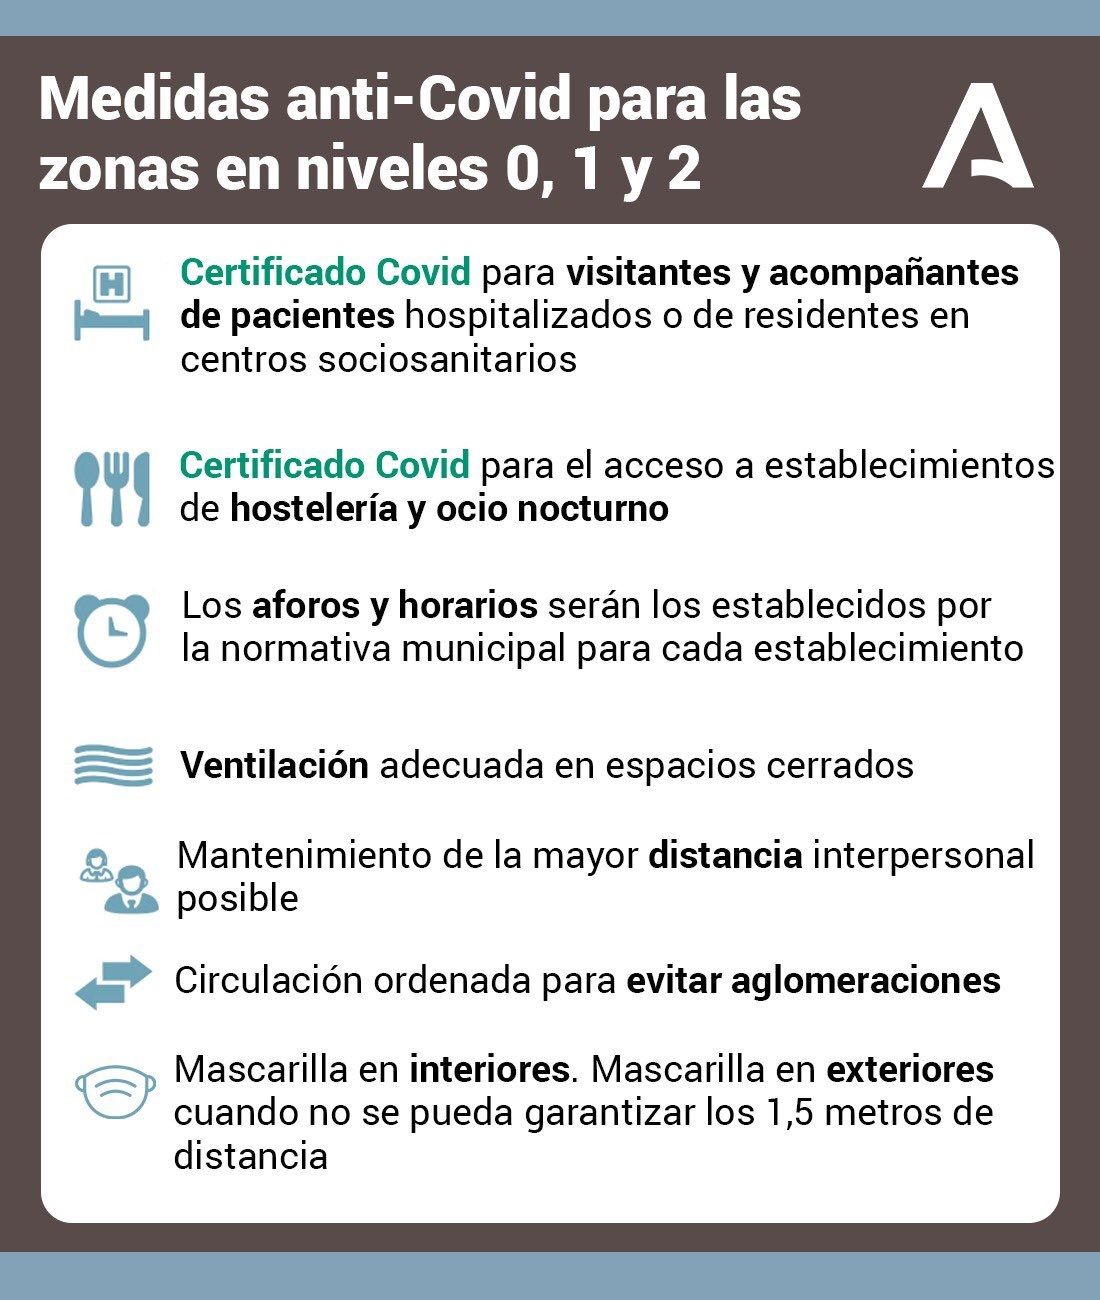 Medidas según el nivel de alerta sanitaria en Andalucía.